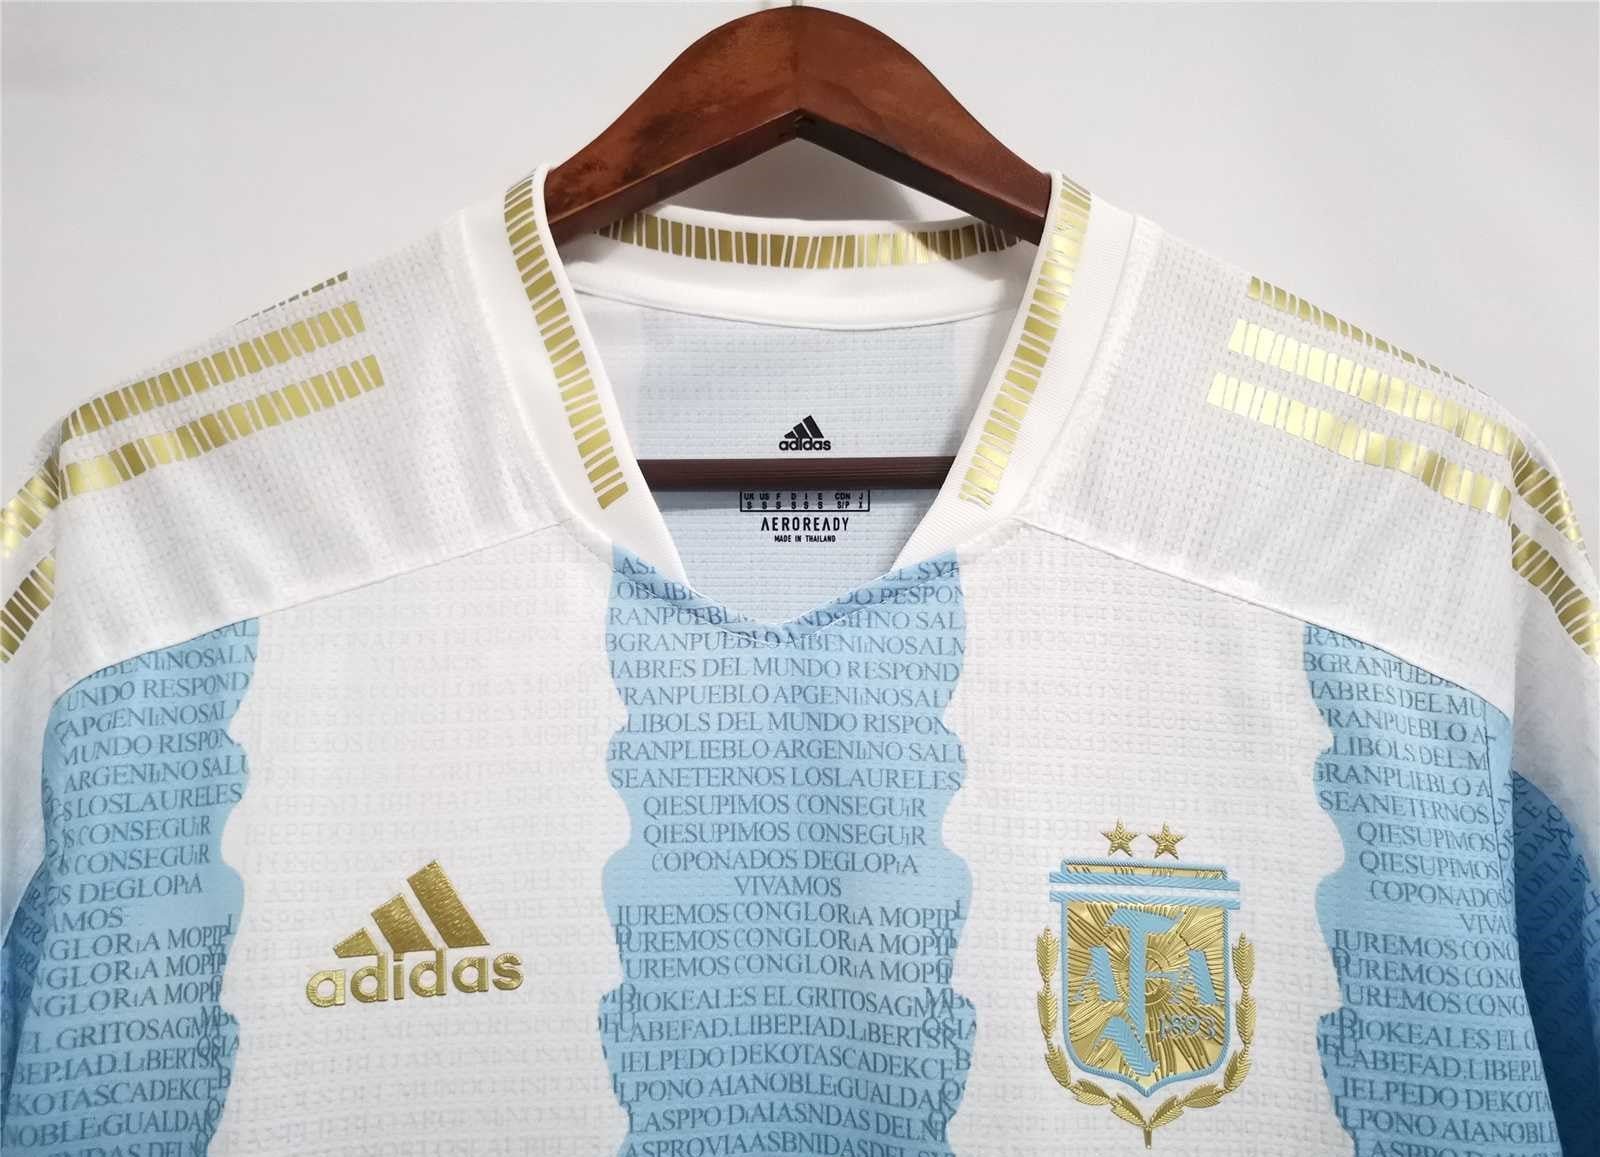 Argentina 2021 Maradona Home Shirt - My Retro Jersey